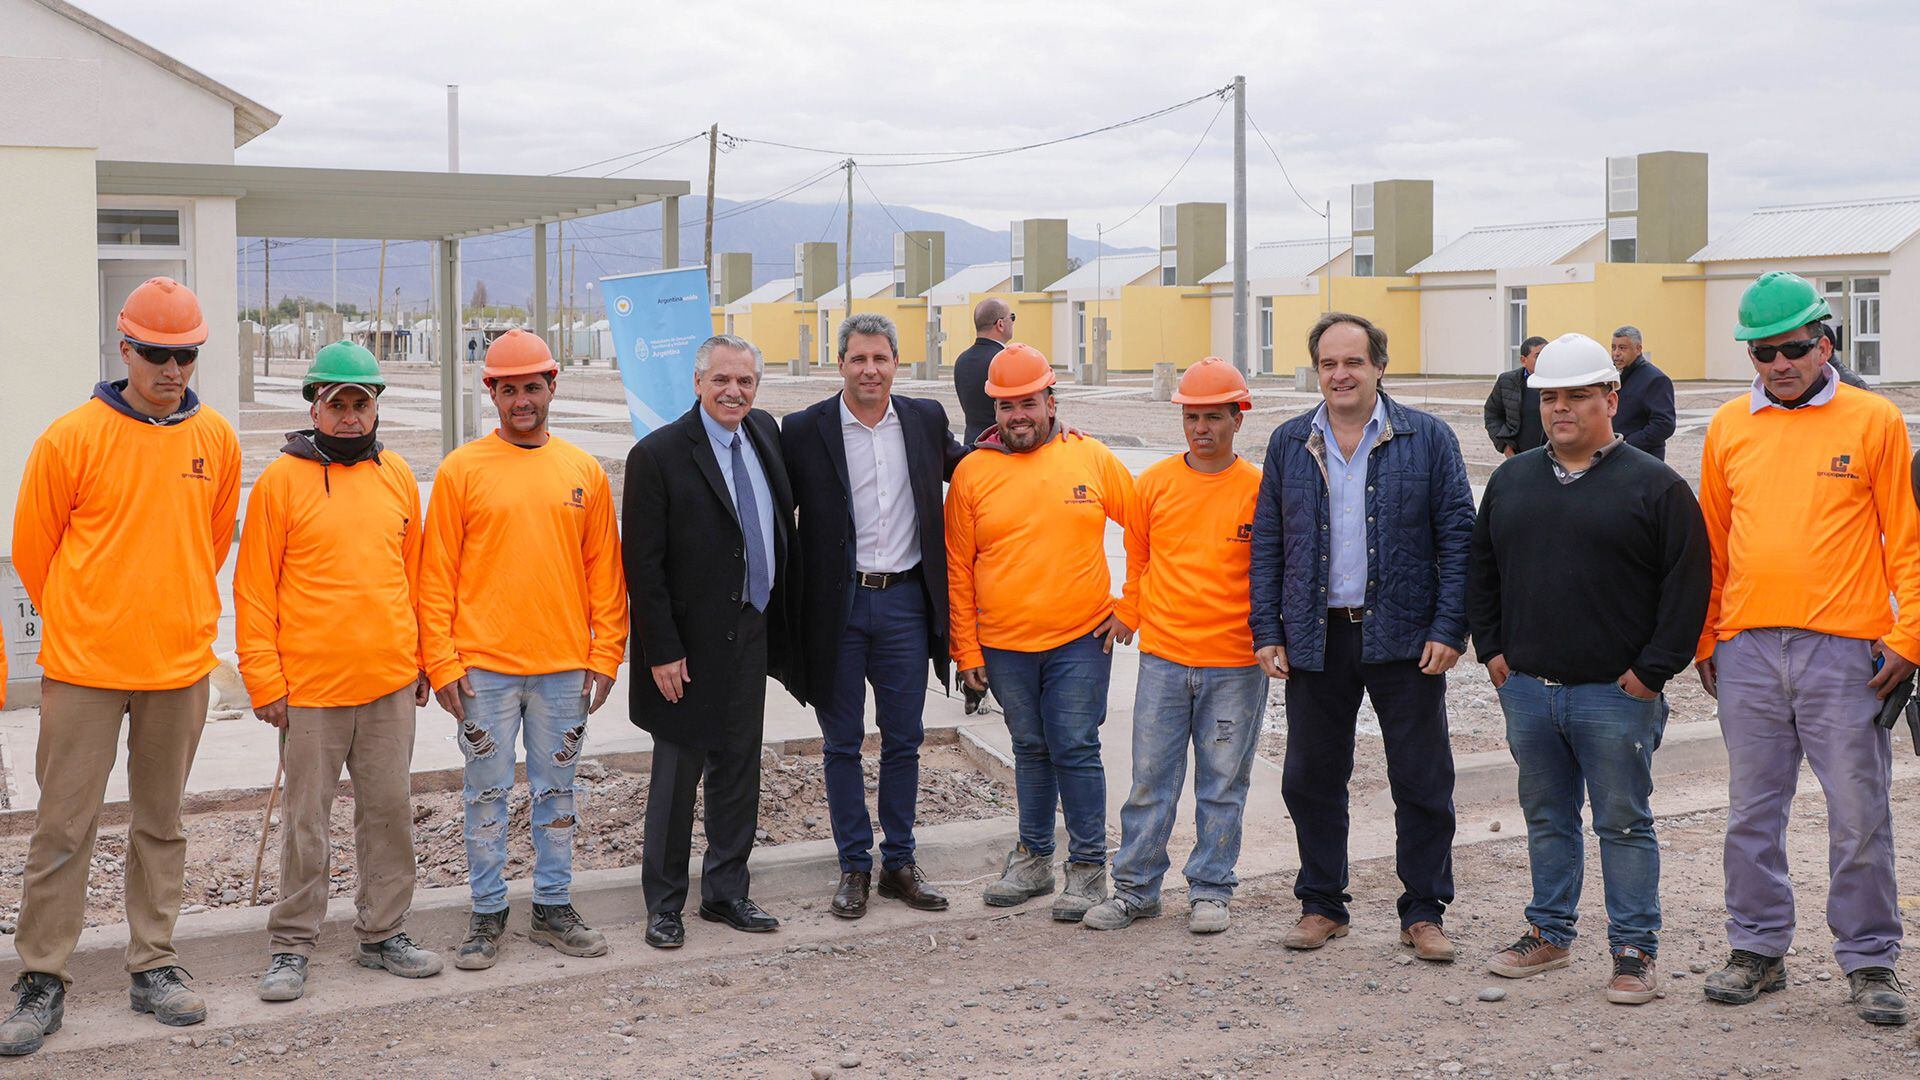 El Presidente posa con los obreros que construyeron el barrio en la localidad de Pocitos, acompañado por el gobernador sanjuanino Sergio Uñac y el ministro de Hábitat, Santiago Maggiotti.